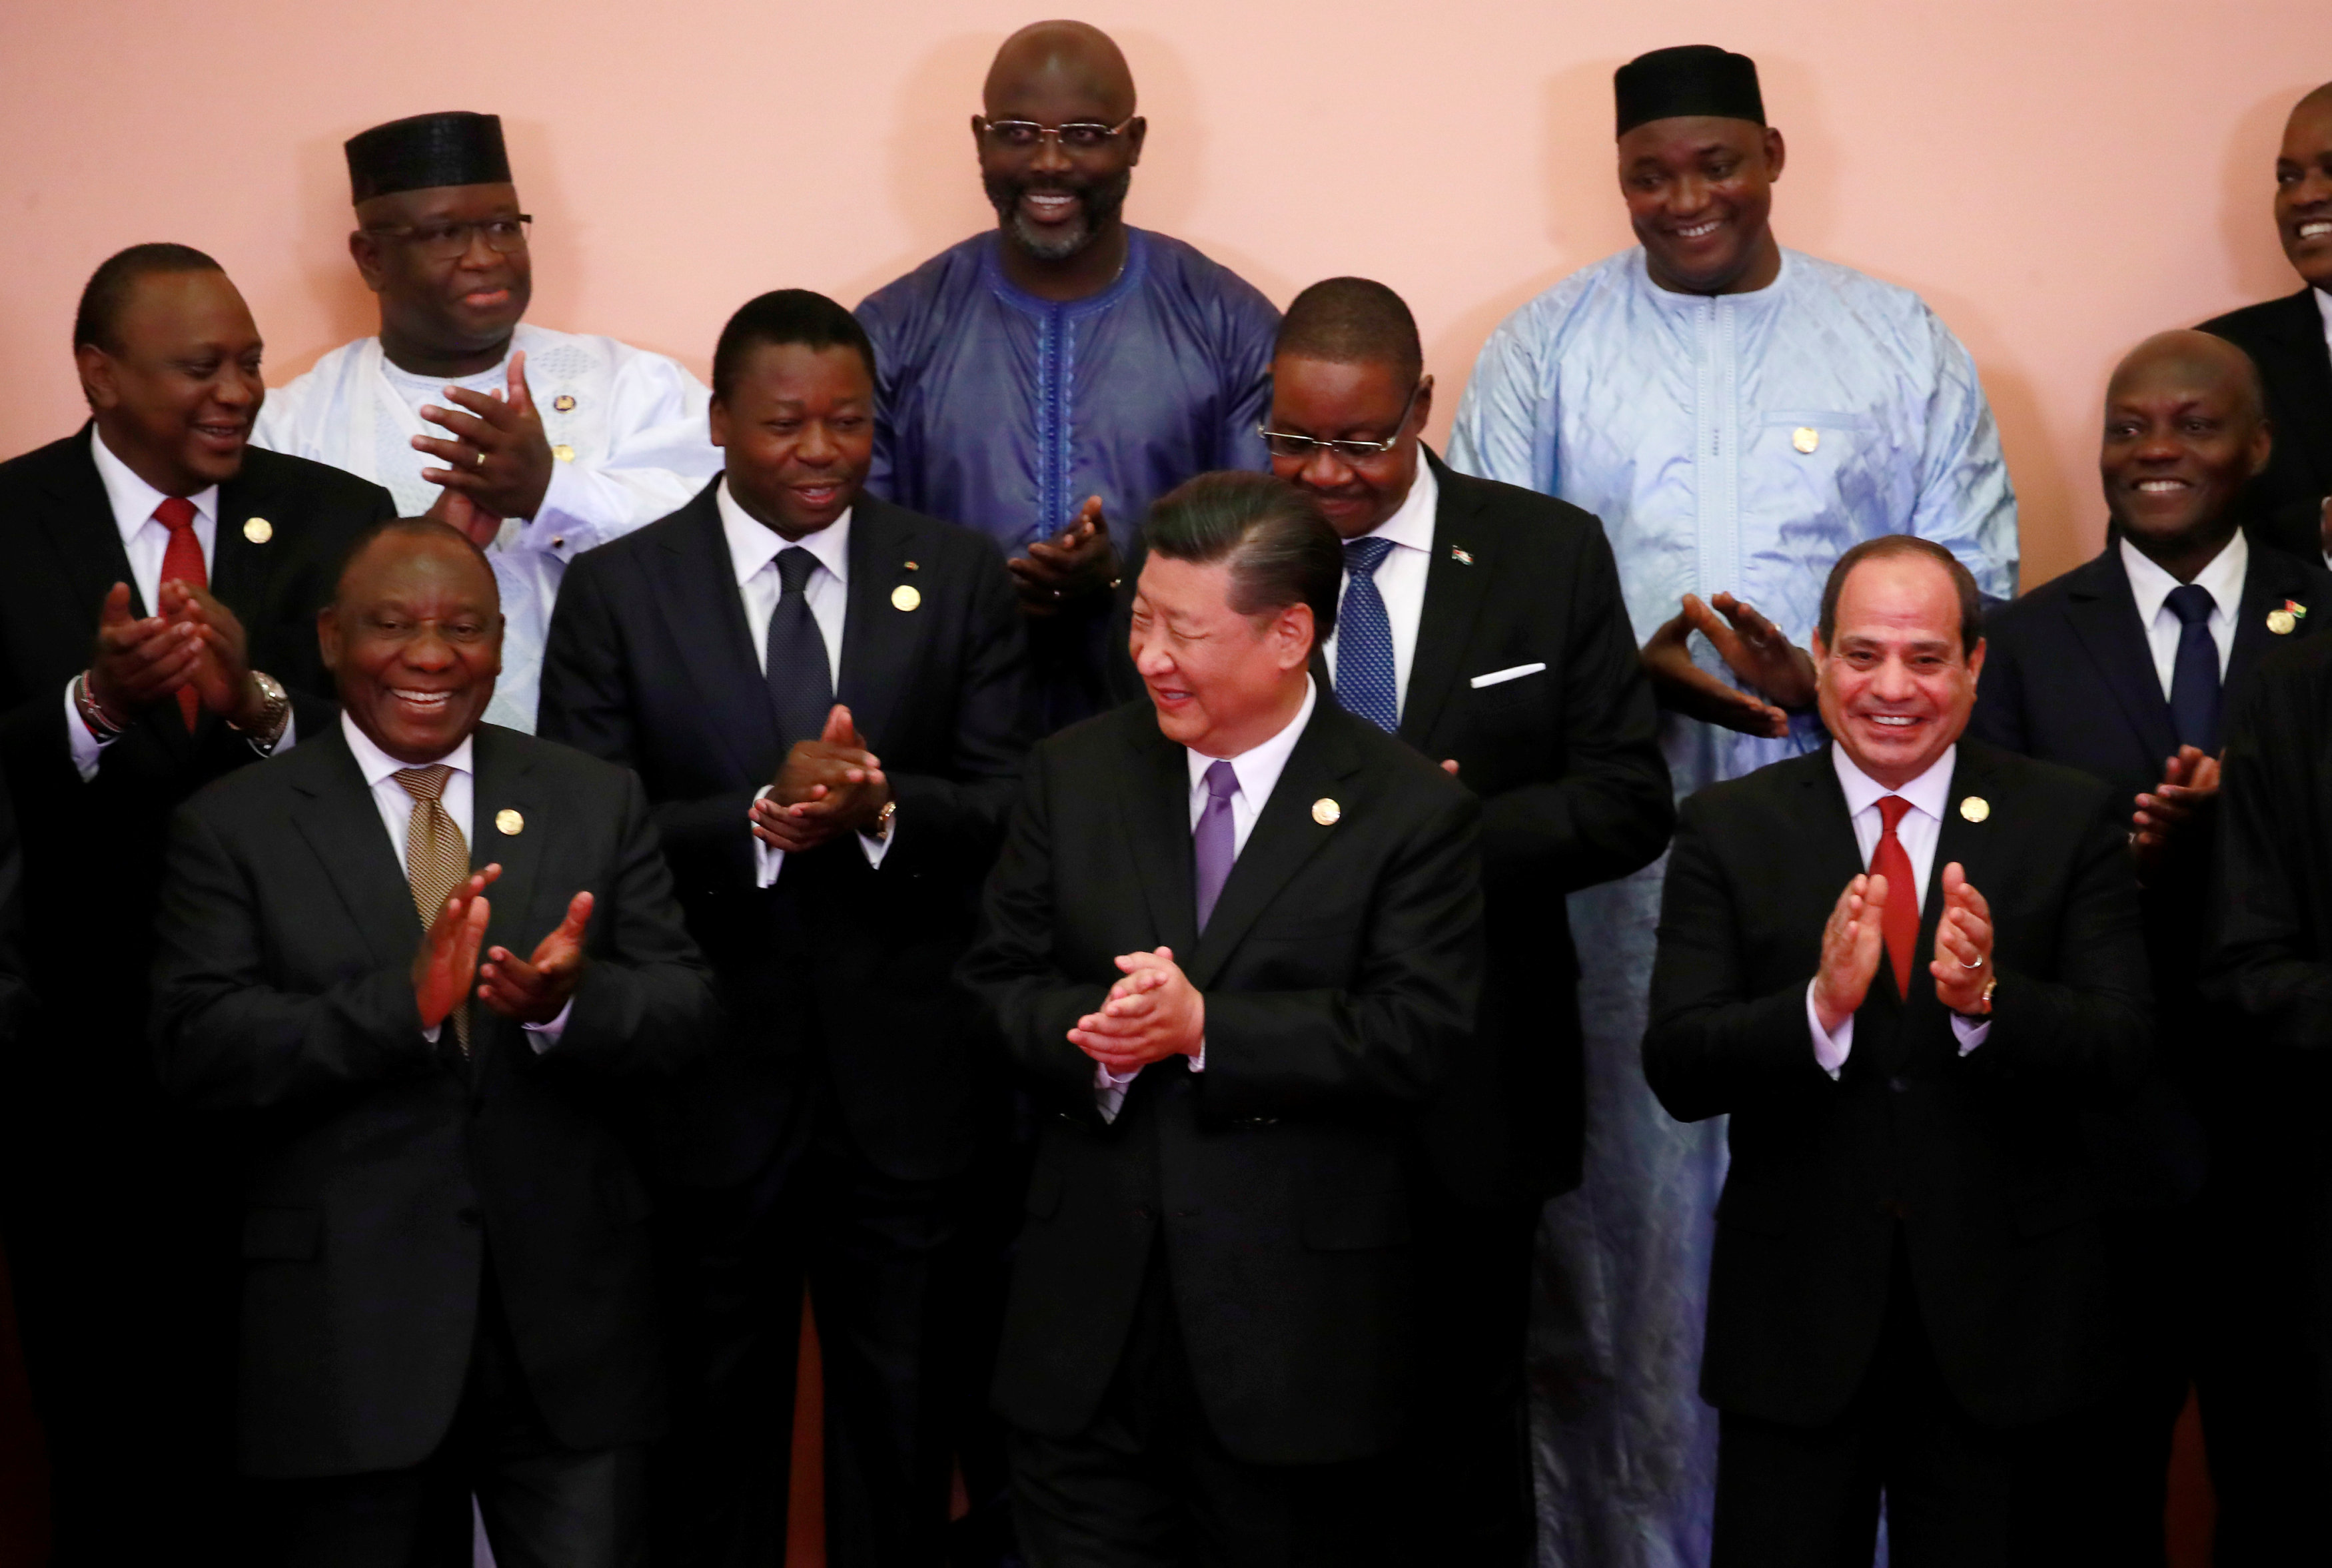 صور تذكارية لزعماء قمة الصين أفريقيا